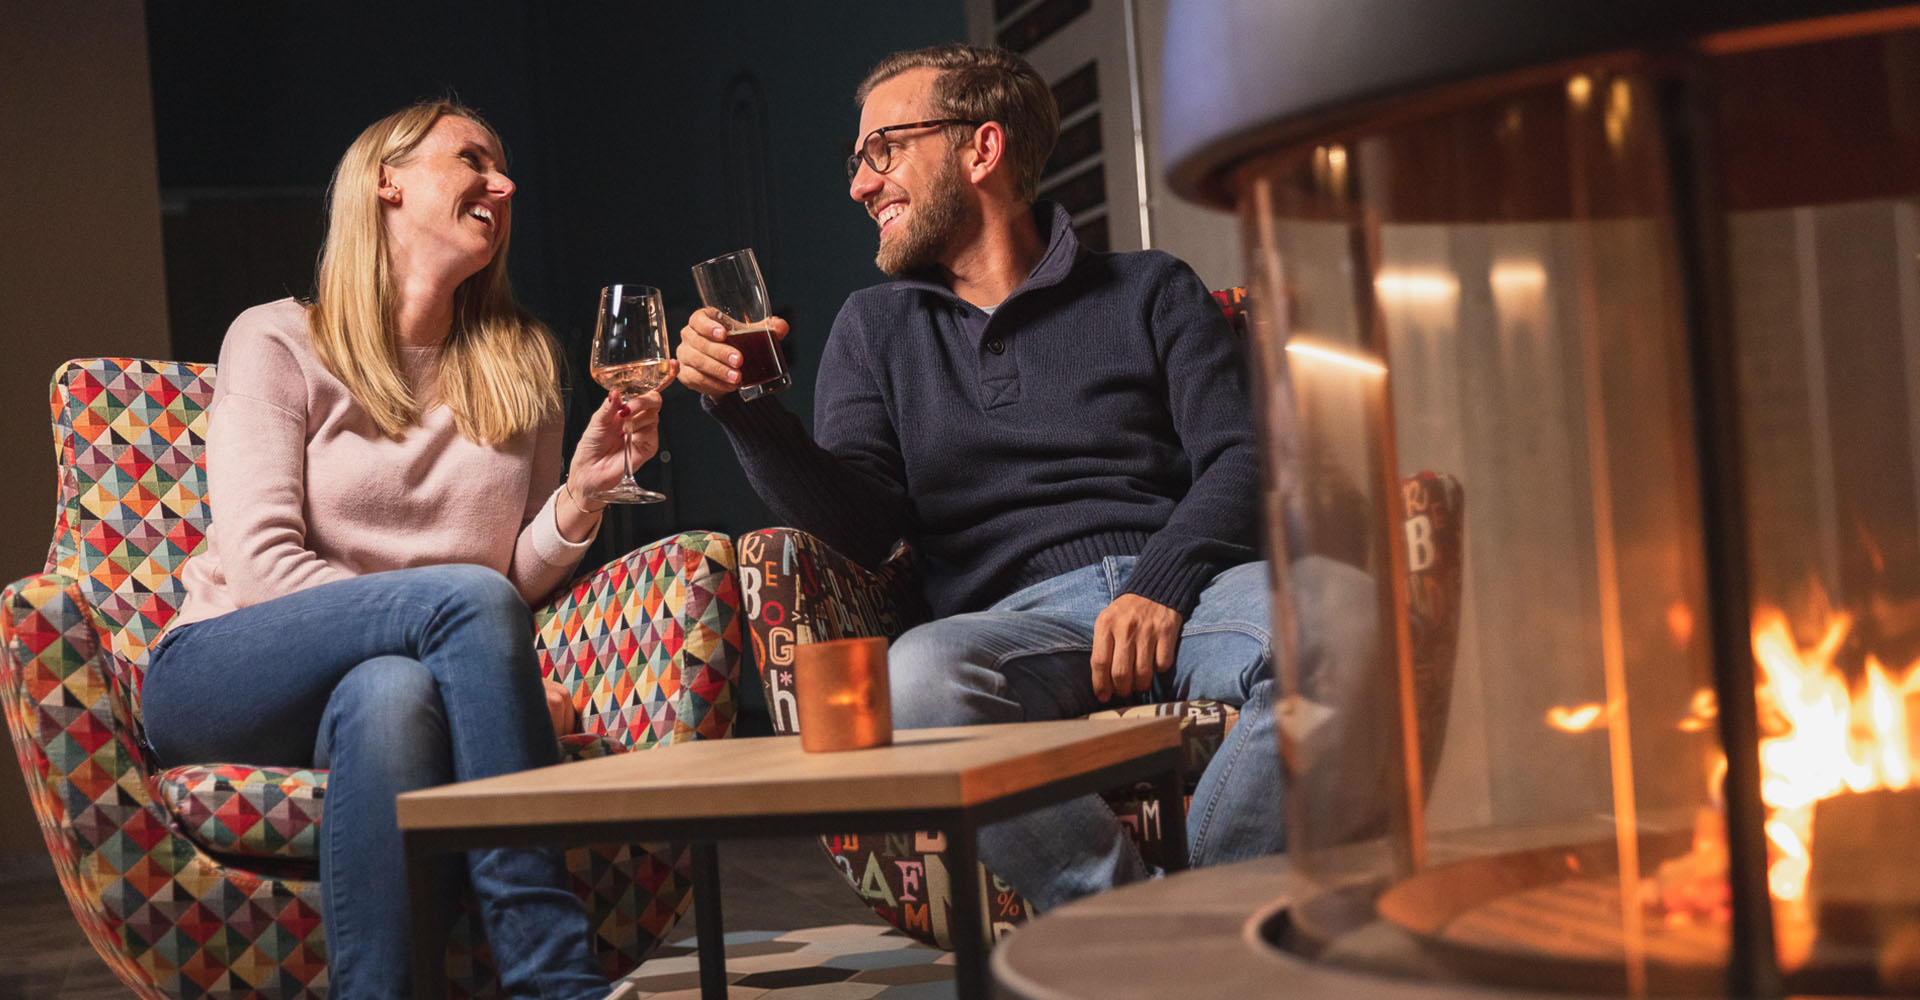 Ein Pärchen sitzt an einem modernen Kamin und stößt mit einem Glas mit Getränk an. Die blonde Frau lacht, der Mann mit der Brille lächelt sie an.